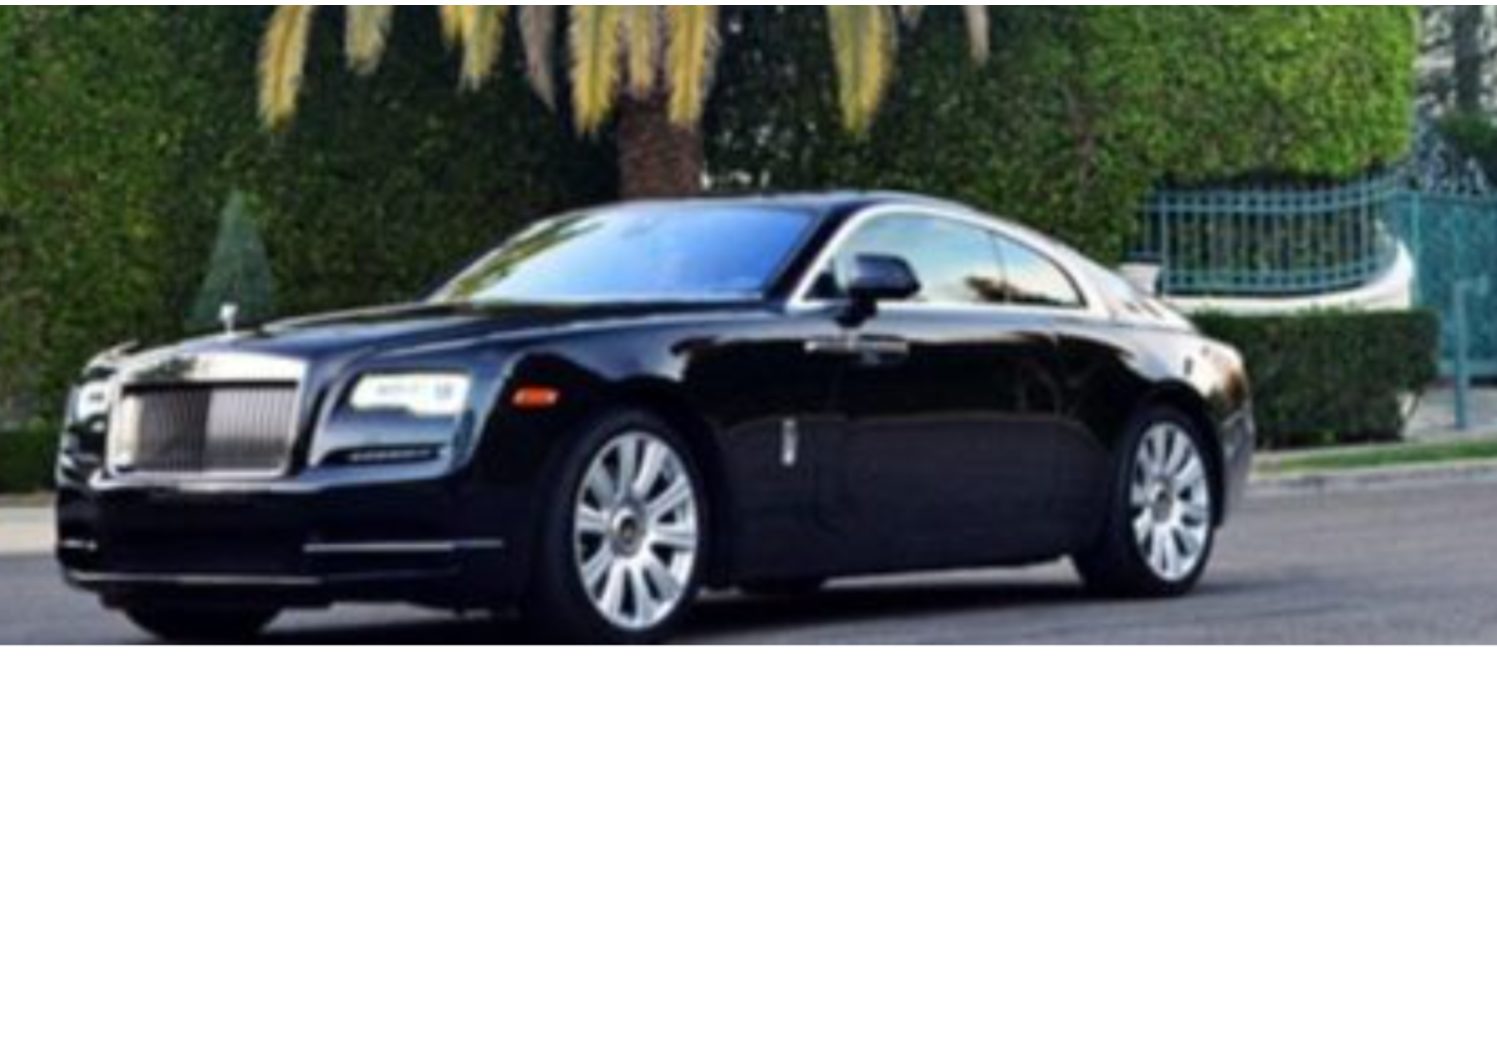 Hire the Rolls Royce Wraith in Dubai